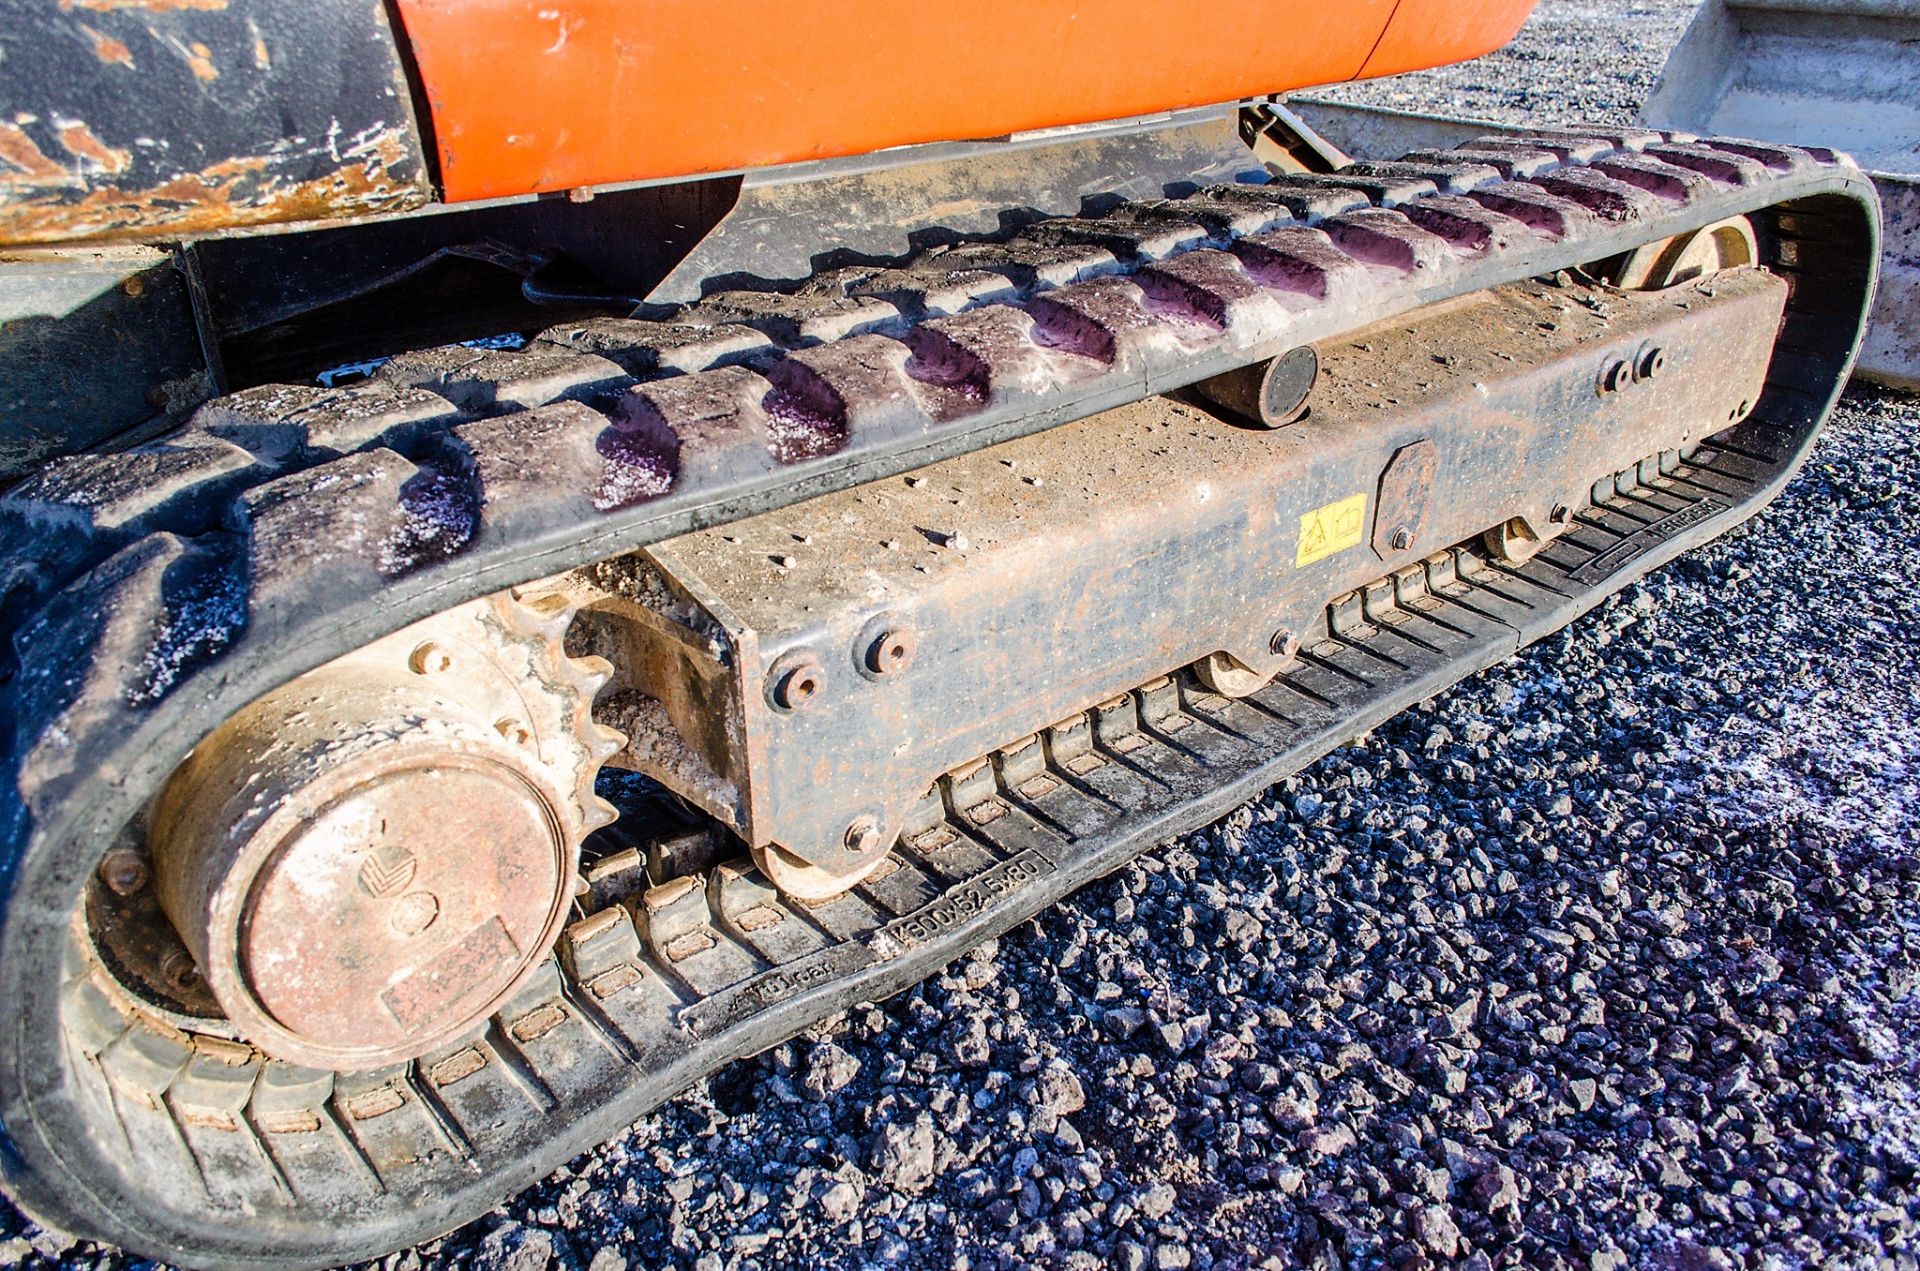 Kubota KX71-3 2.6 tonne rubber tracked excavator - Image 12 of 19